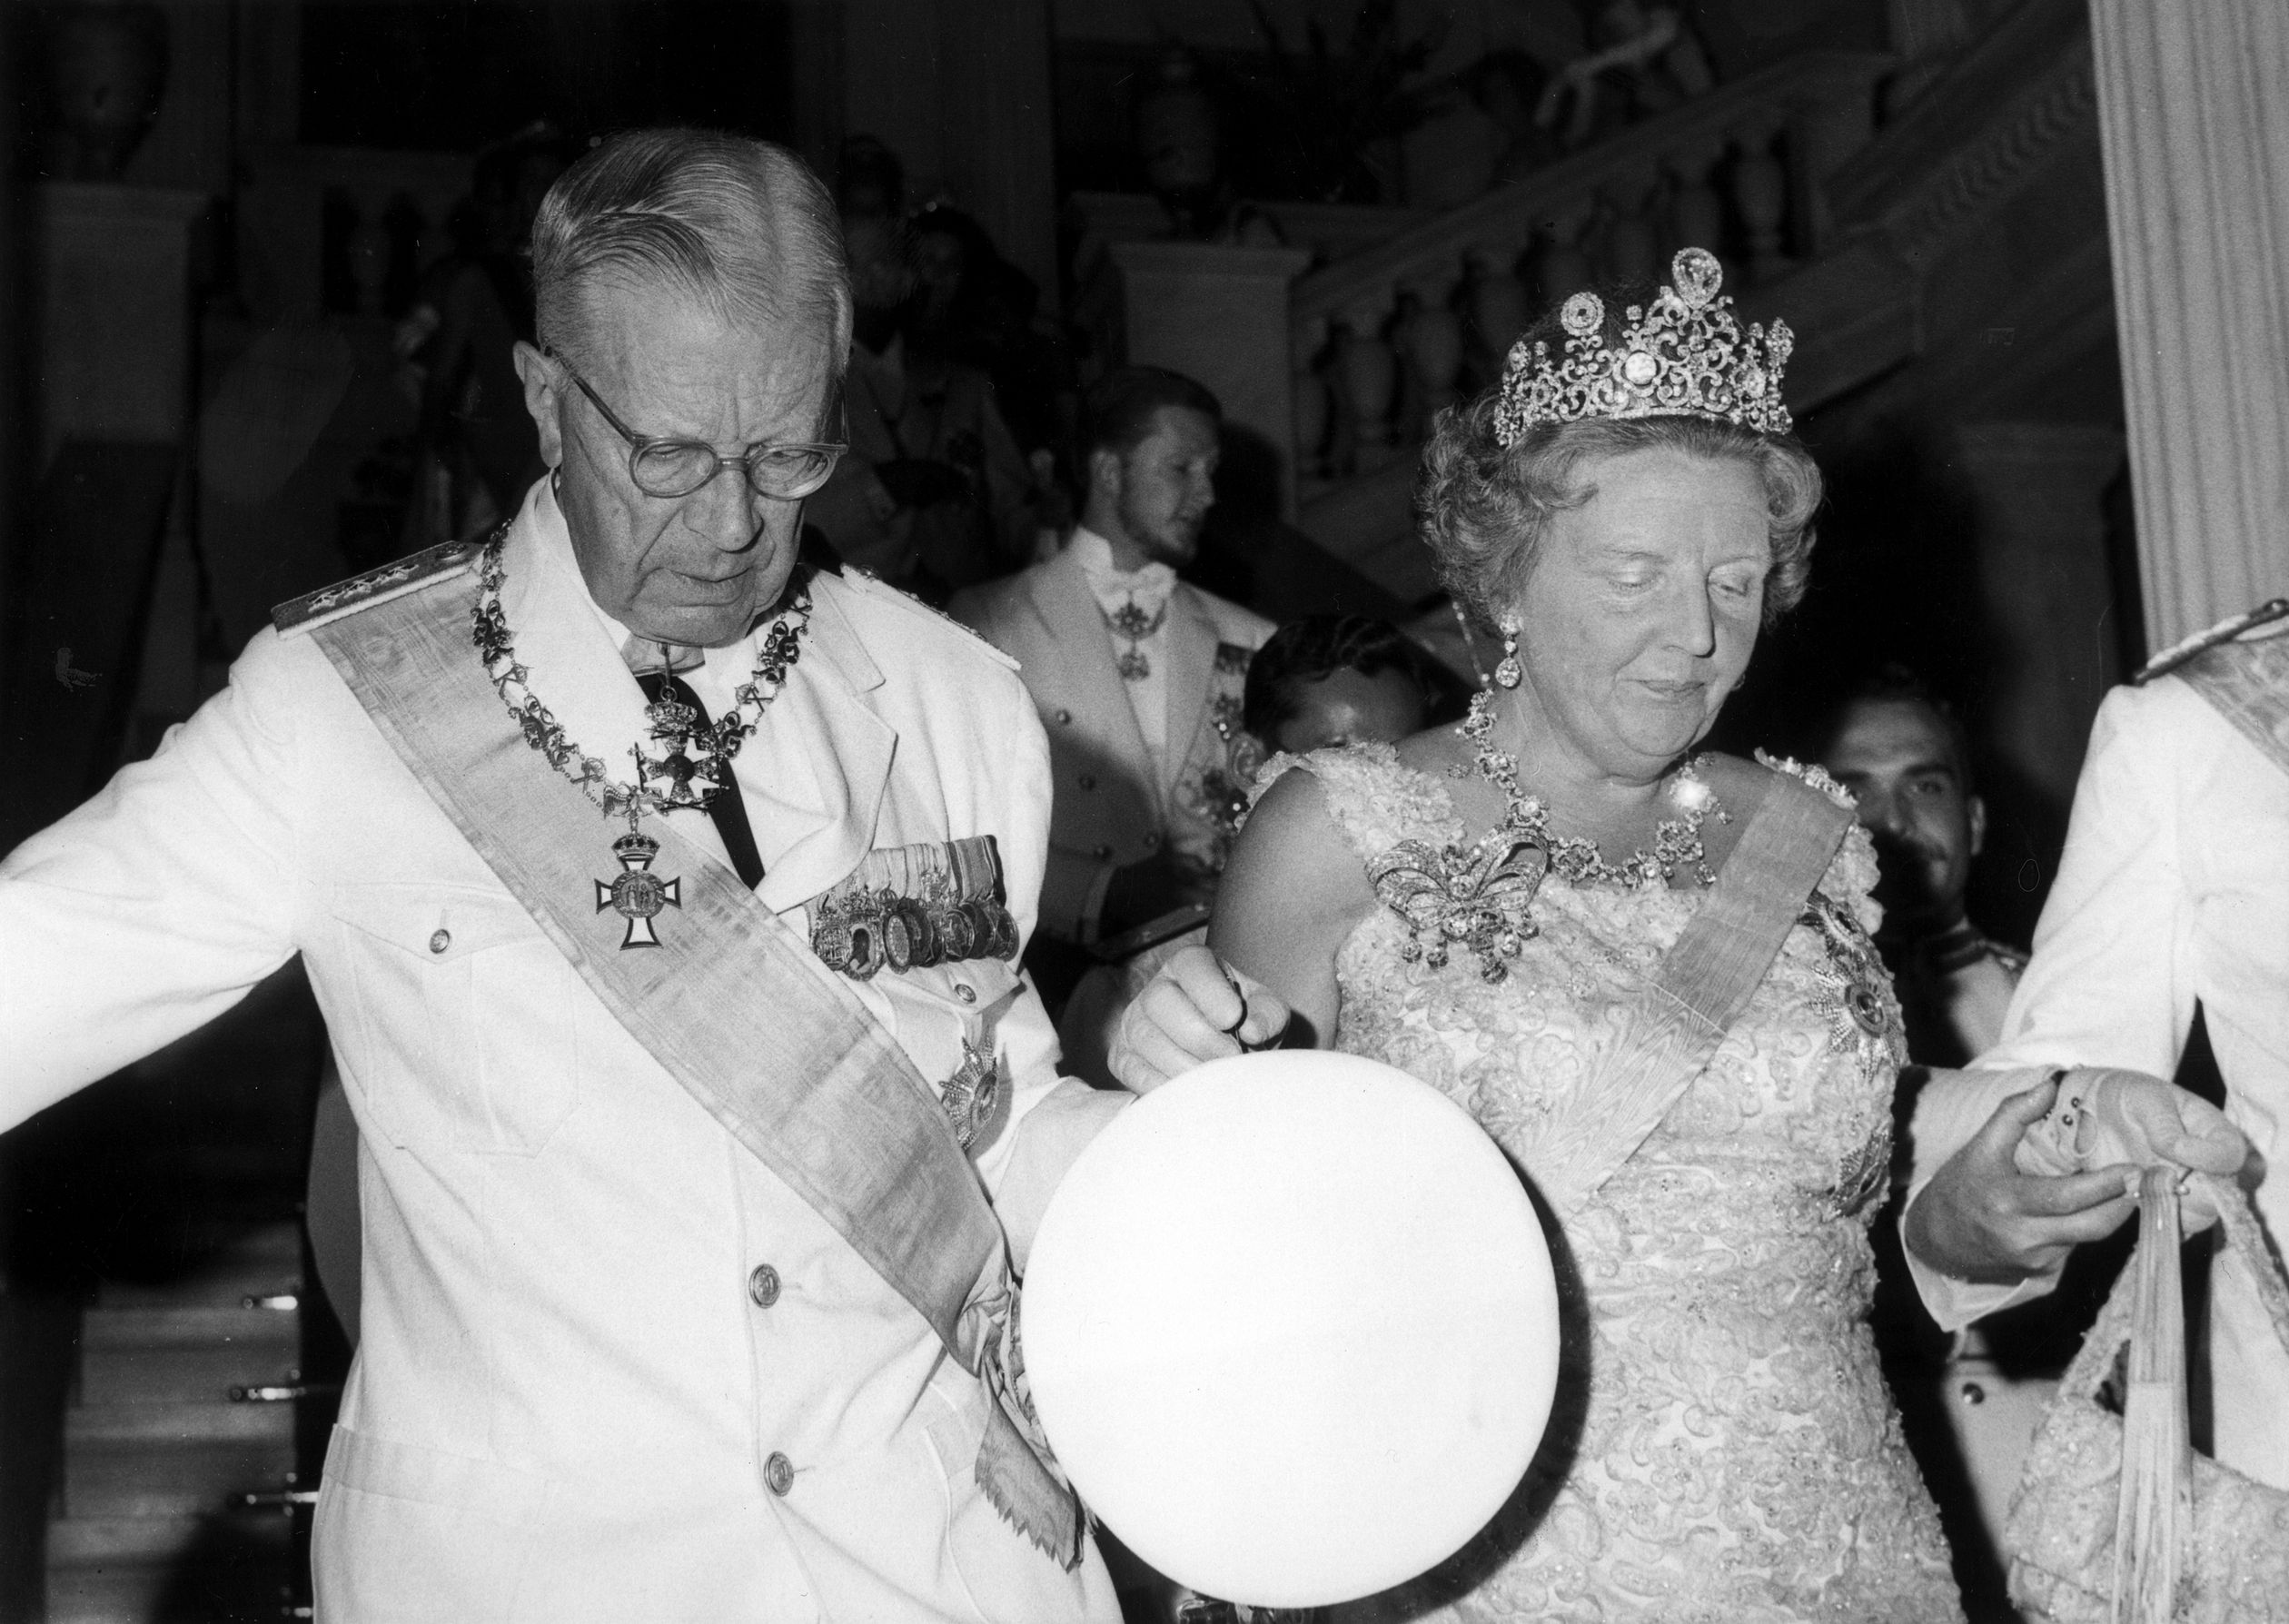 1964 - Koningin Juliana en koning Gustav Adolf VI van Zweden betreden het bal ter gelegenheid van